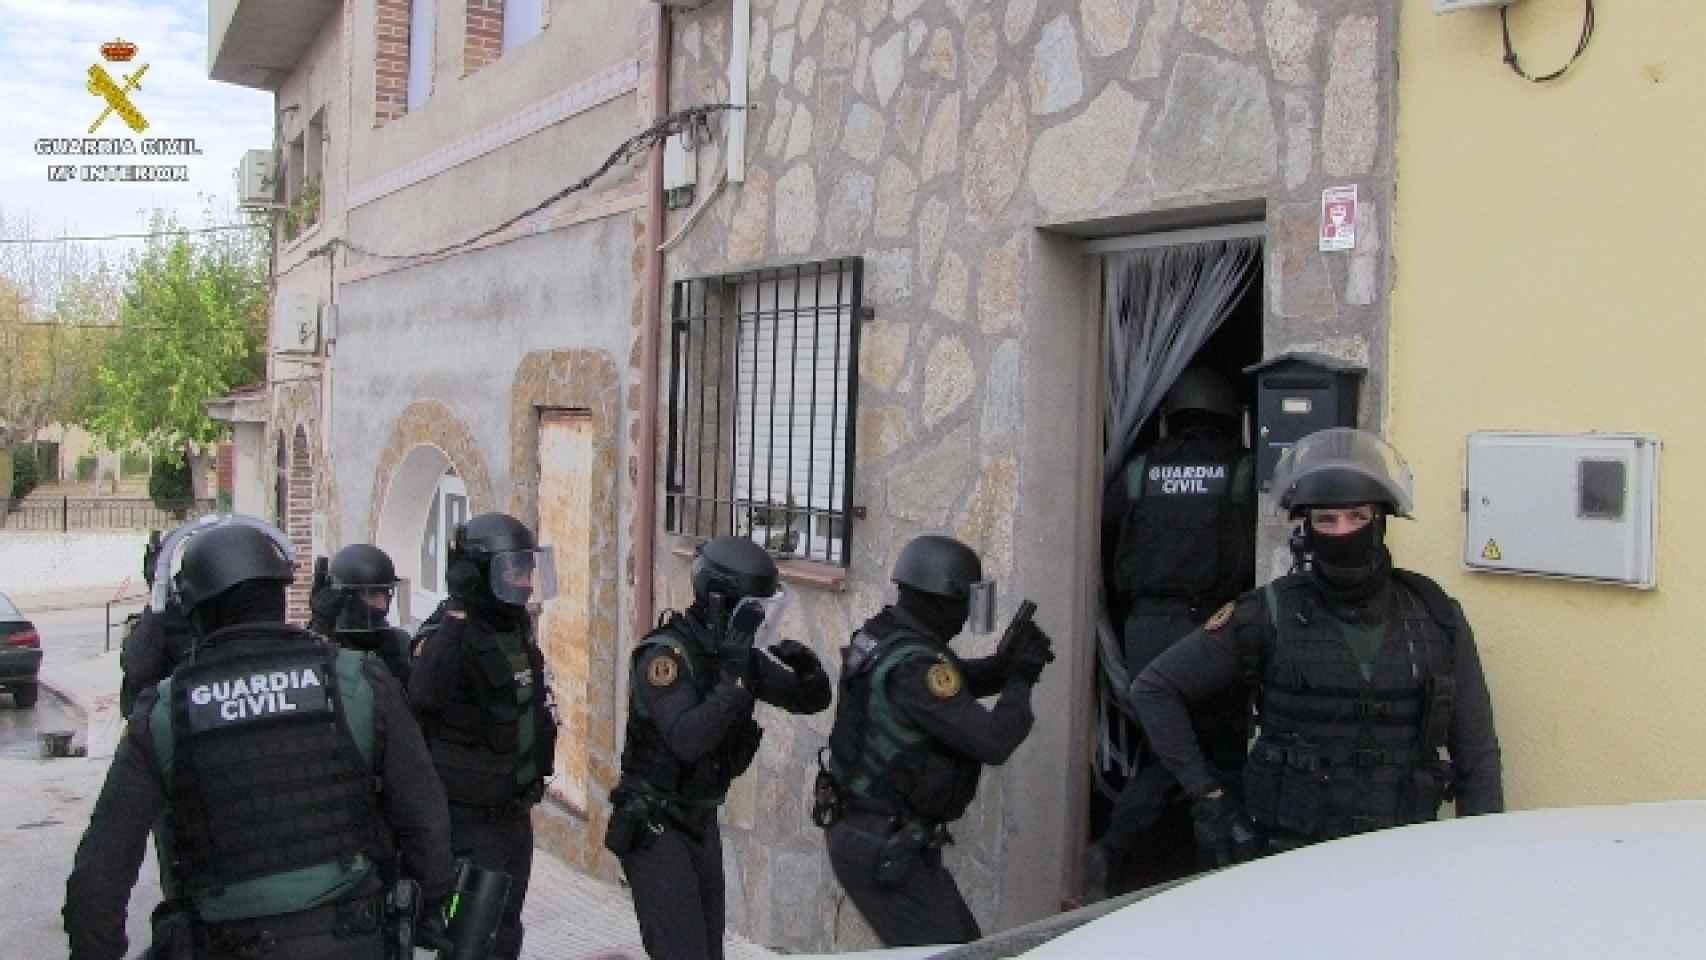 Las actuaciones policiales han sido dirigidas por el Juzgado de Instrucción número 1 de Torrijos (Toledo) y llevadas a cabo por el Equipo de Secuestros y Extorsiones de la UCO de la Guardia Civil, la Policía Judicial de Toledo y el Equipo Territorial de Policía Judicial de Torrijos.